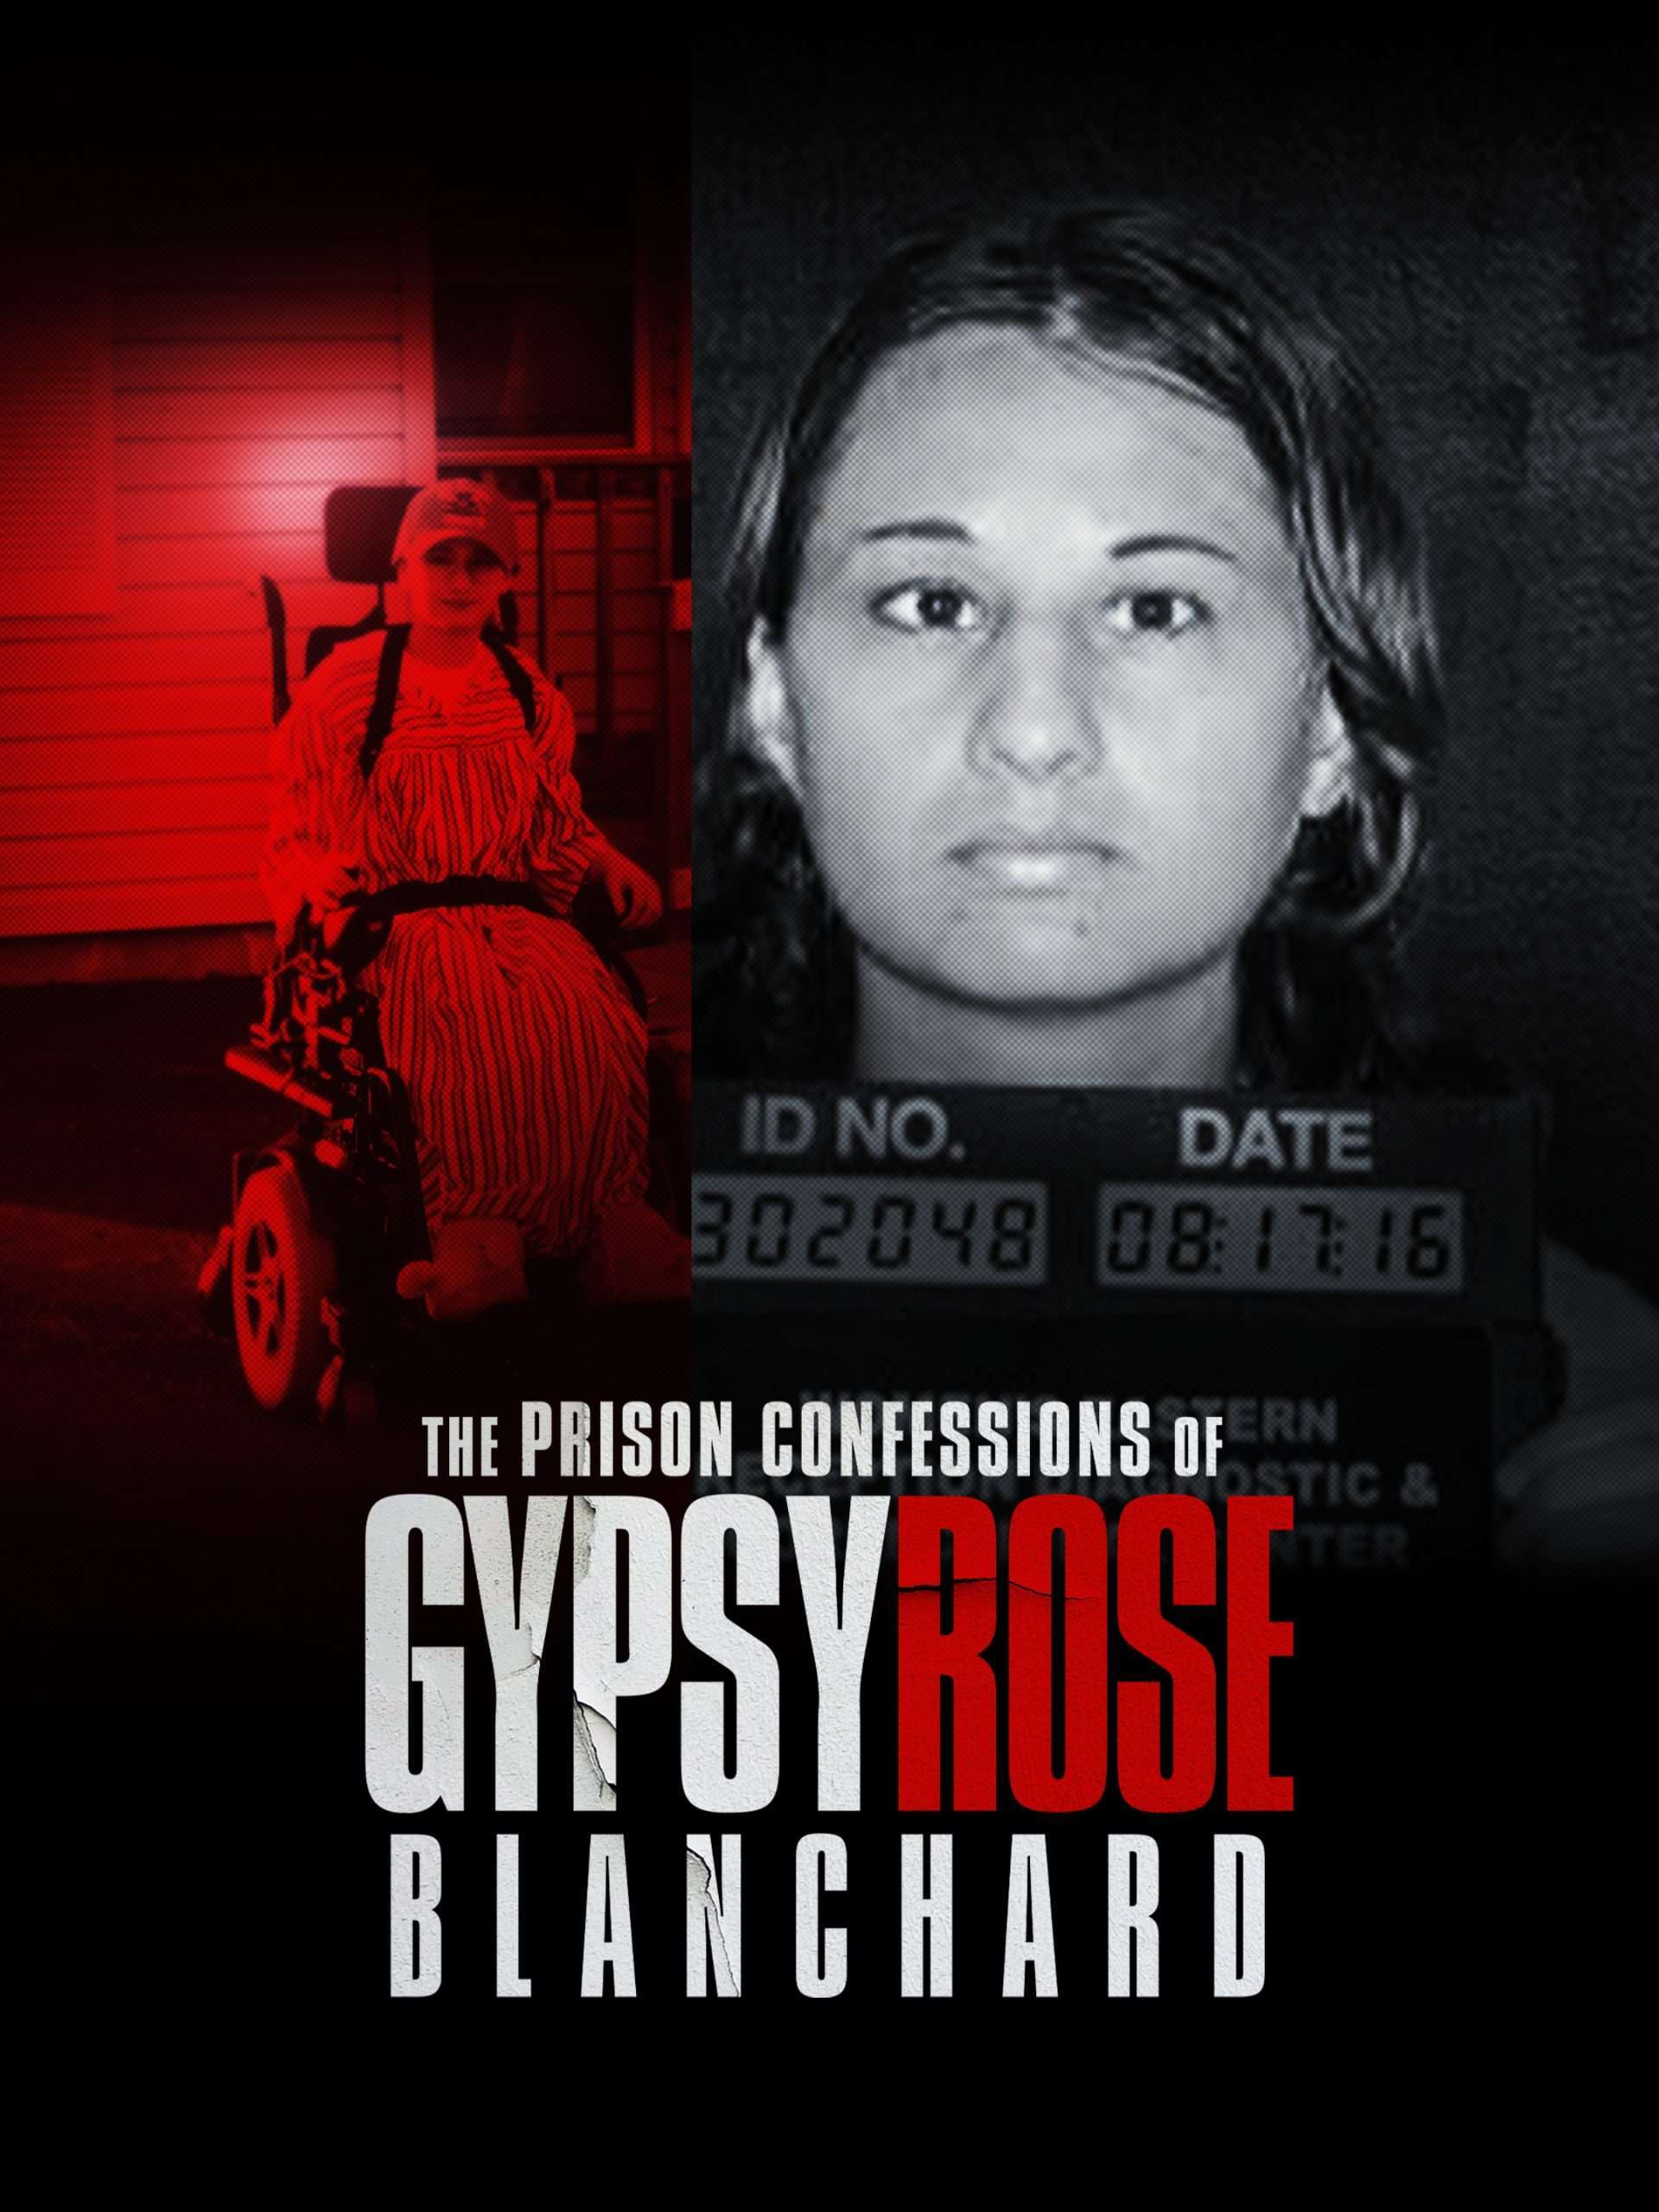 The Prison Confessions of Gypsy Rose Blanchard "Born a Prisoner" S1E1